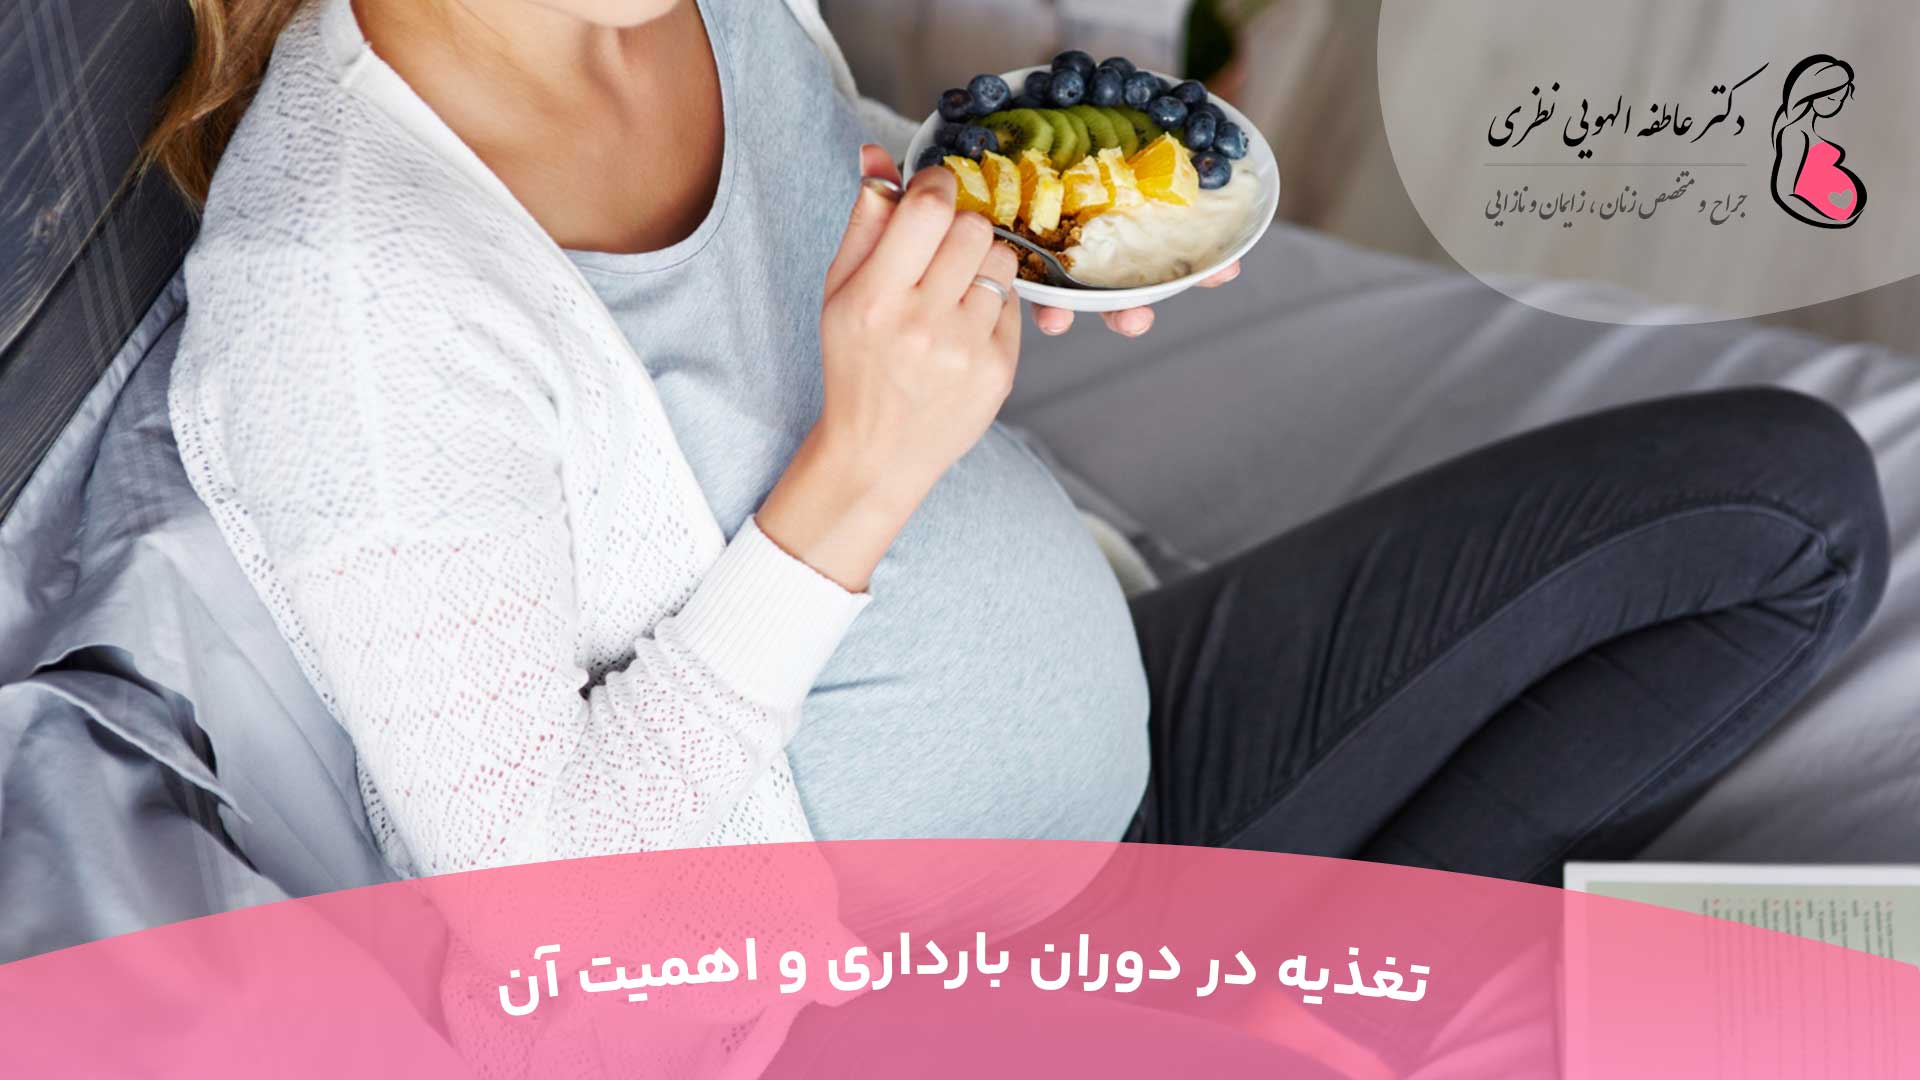 تغذیه در دوران بارداری و اهمیت آن